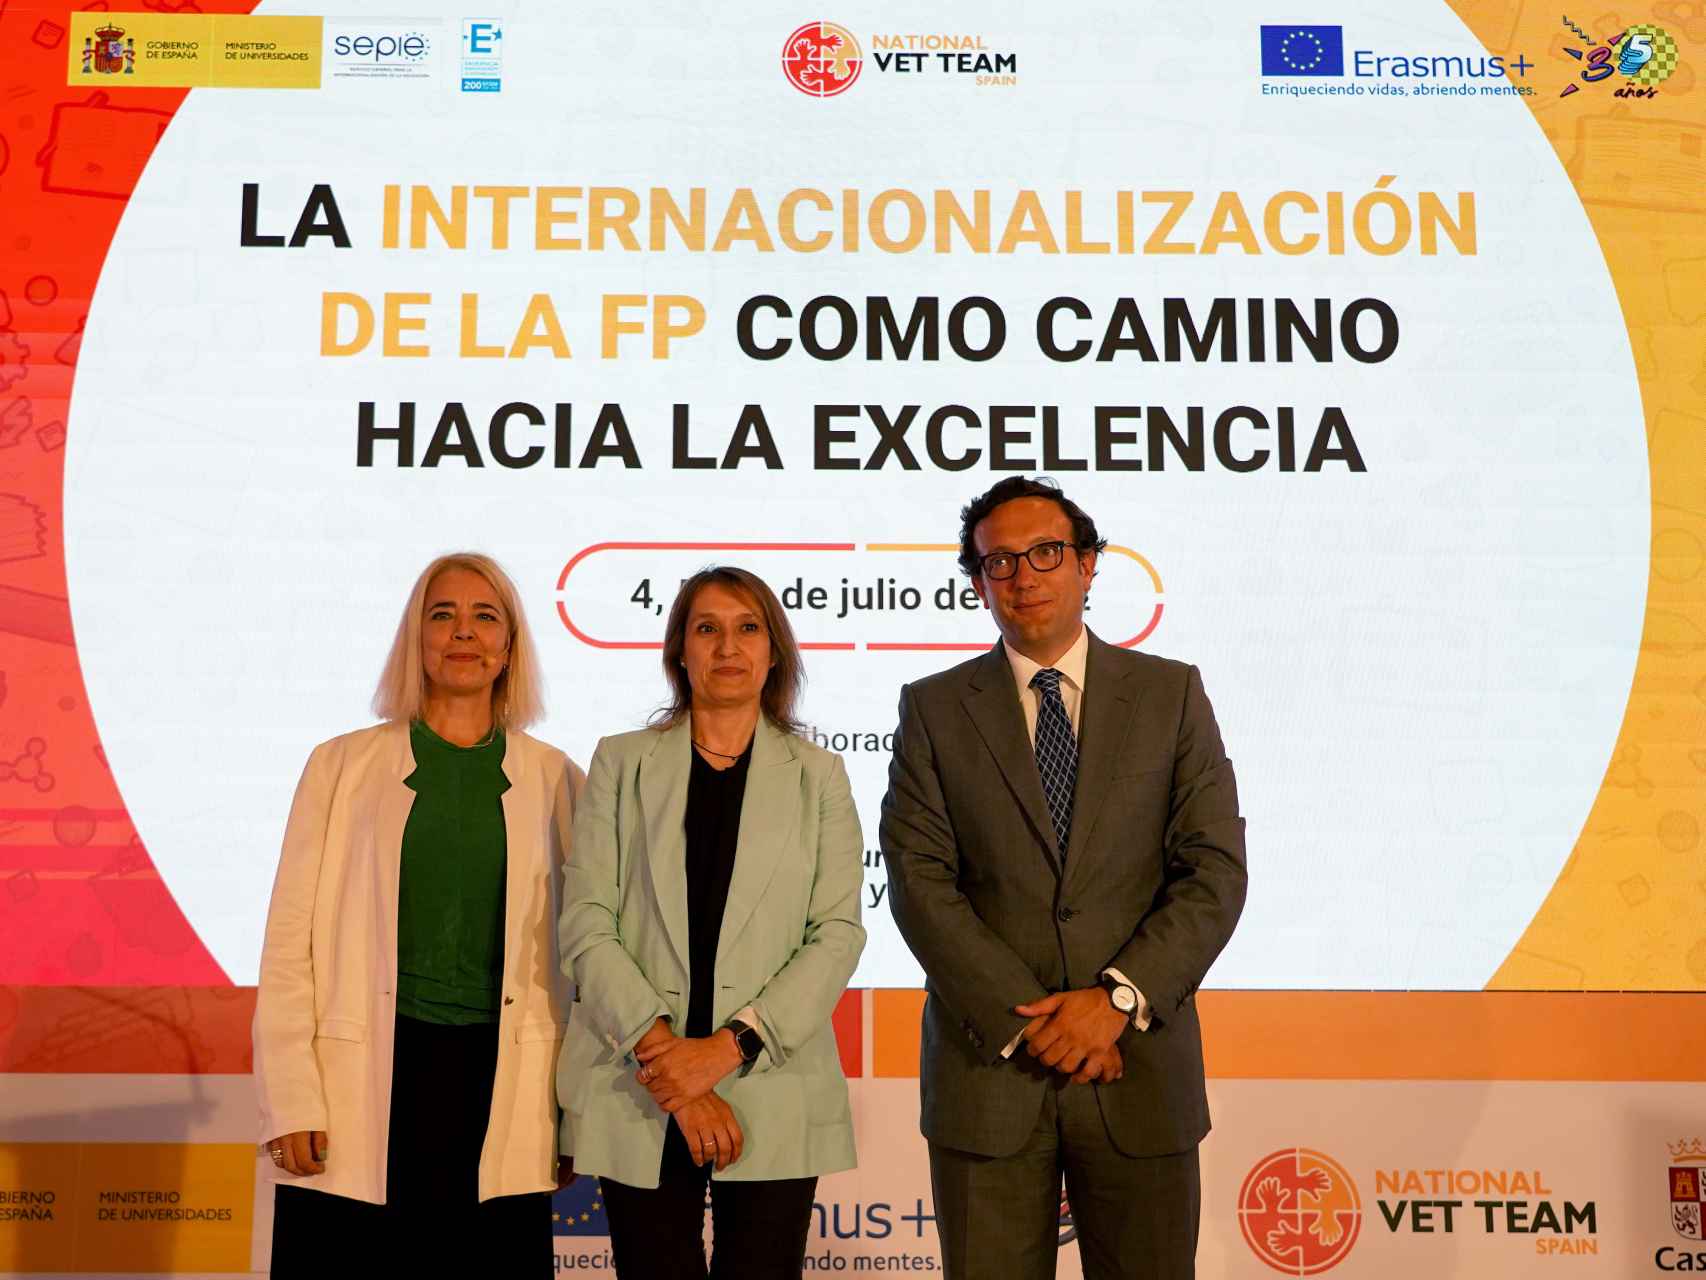 La consejera de Educación, Rocío Lucas, durante la inauguración de las jornadas 'La internacionalización de la FP como camino hacia la excelencia'.